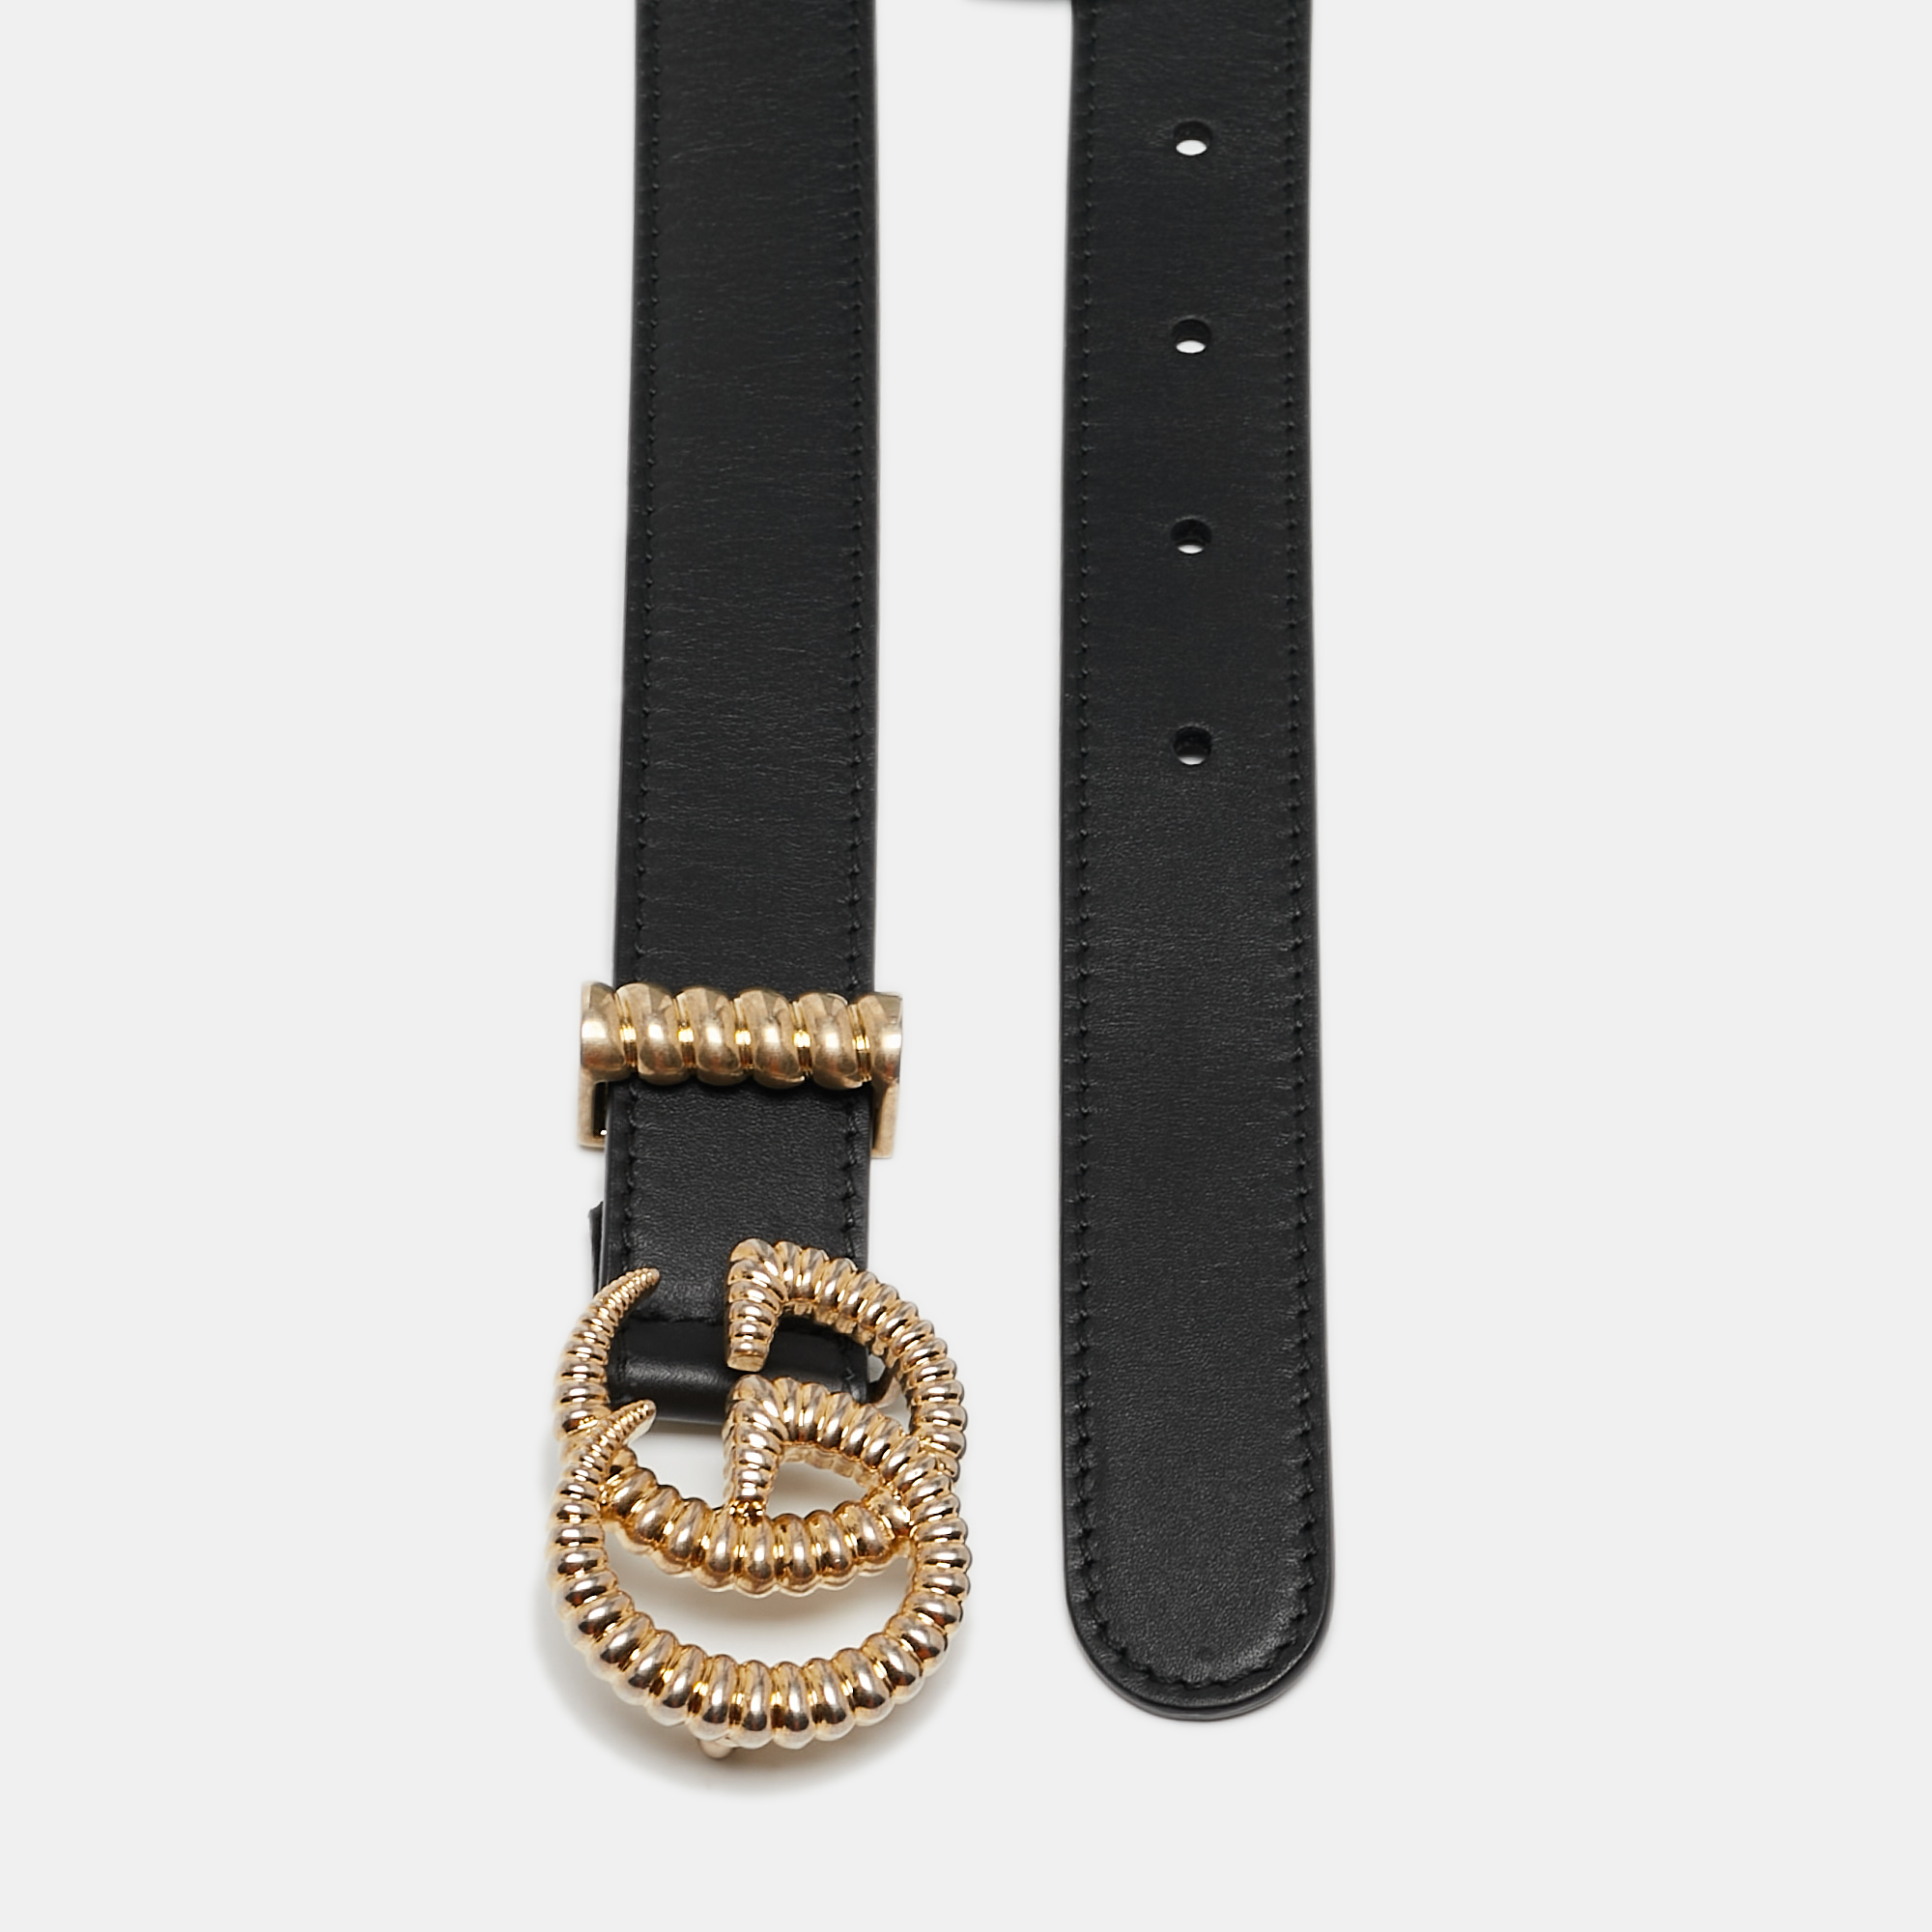 Gucci Black Leather Torchon Double G Buckle Slim Belt 80 CM